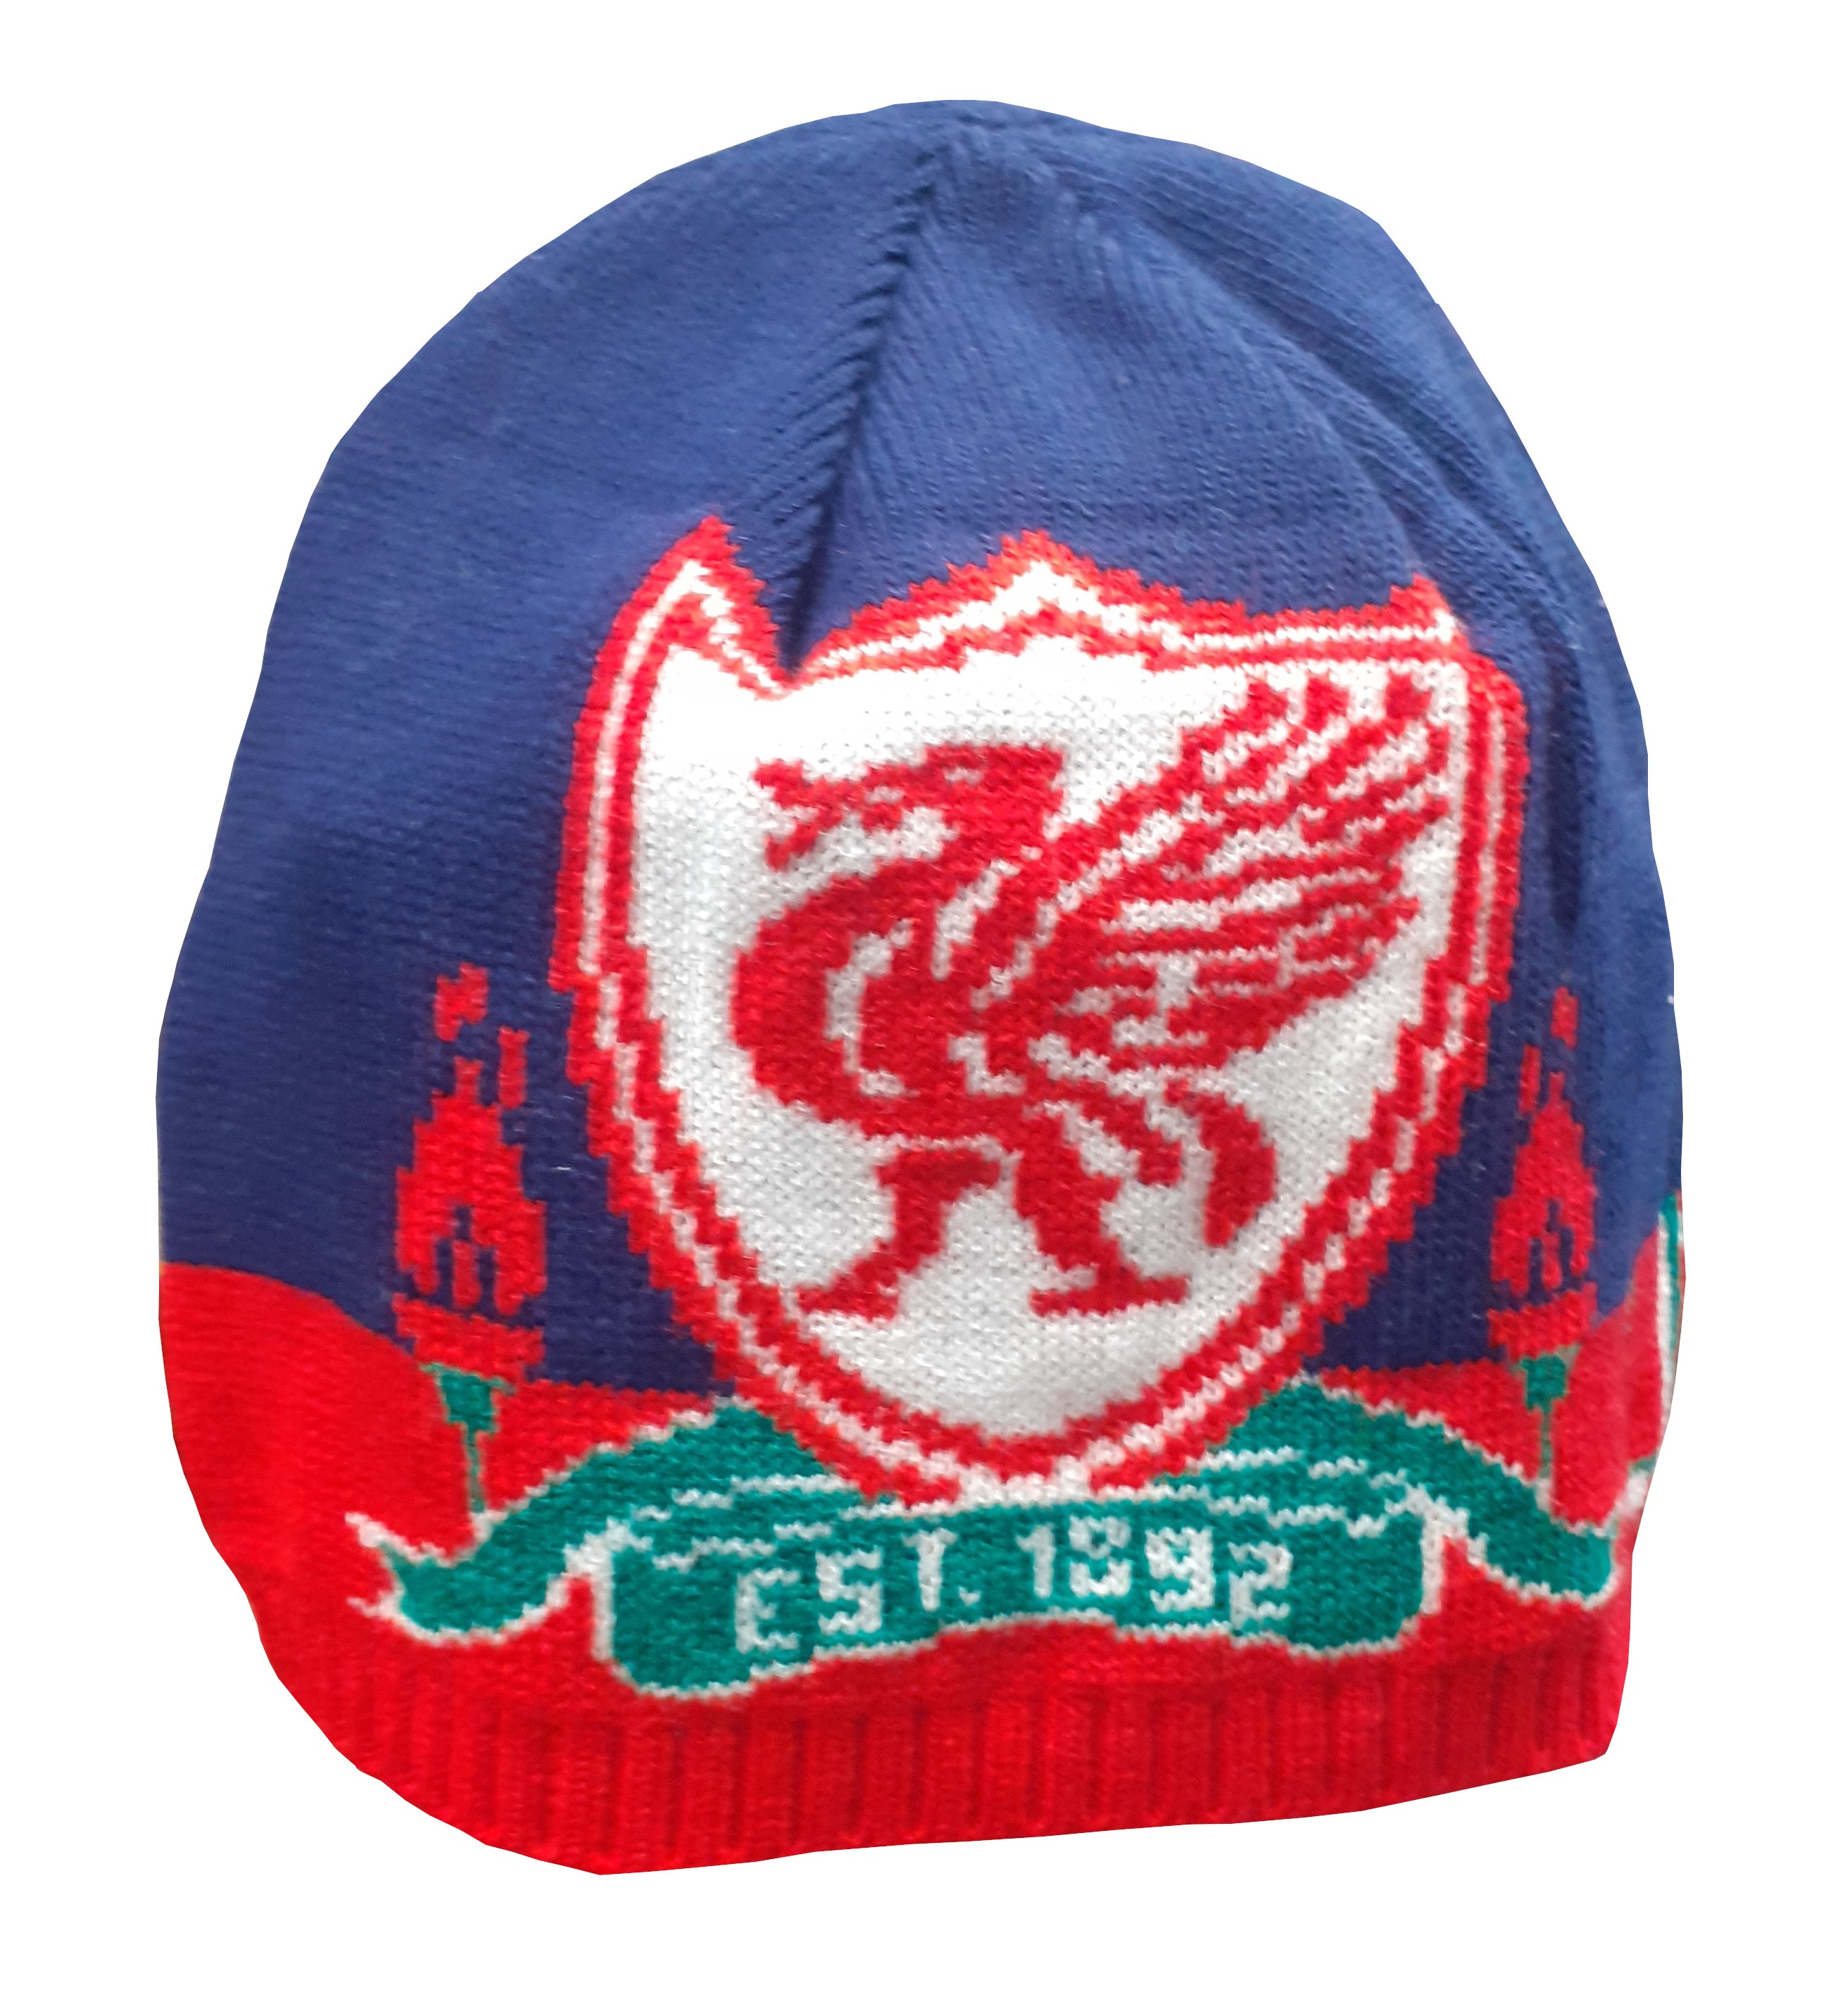 Pletená čepice Liverpool